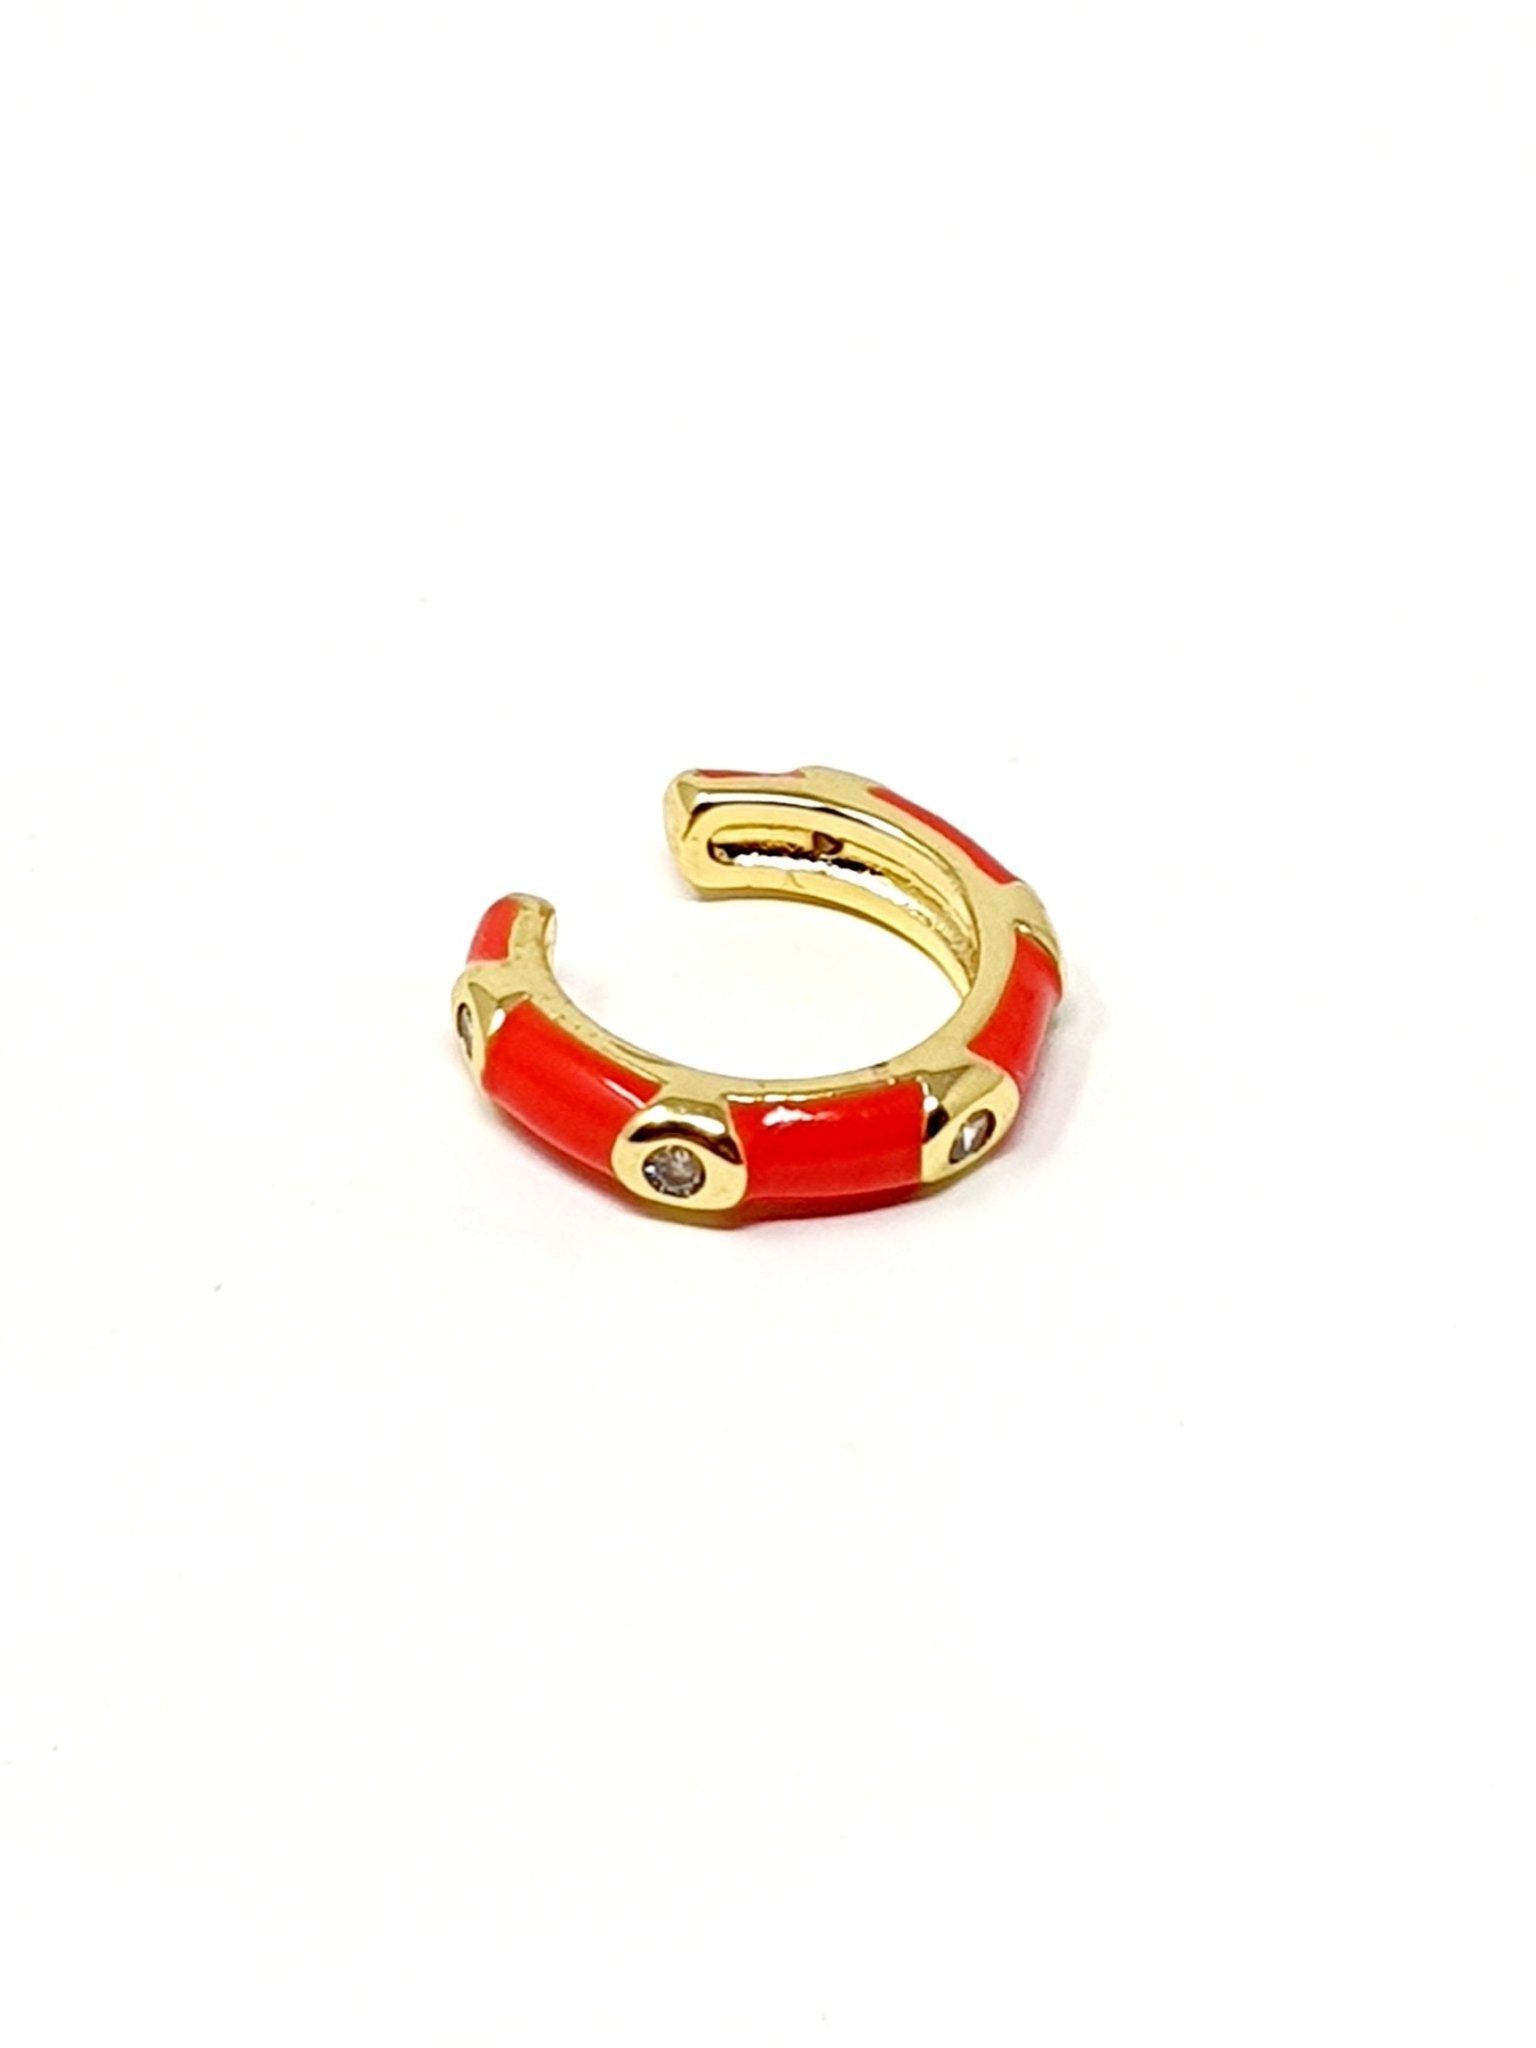 Ear cuff “Positano” Gold & Corallo - 333HOPE333